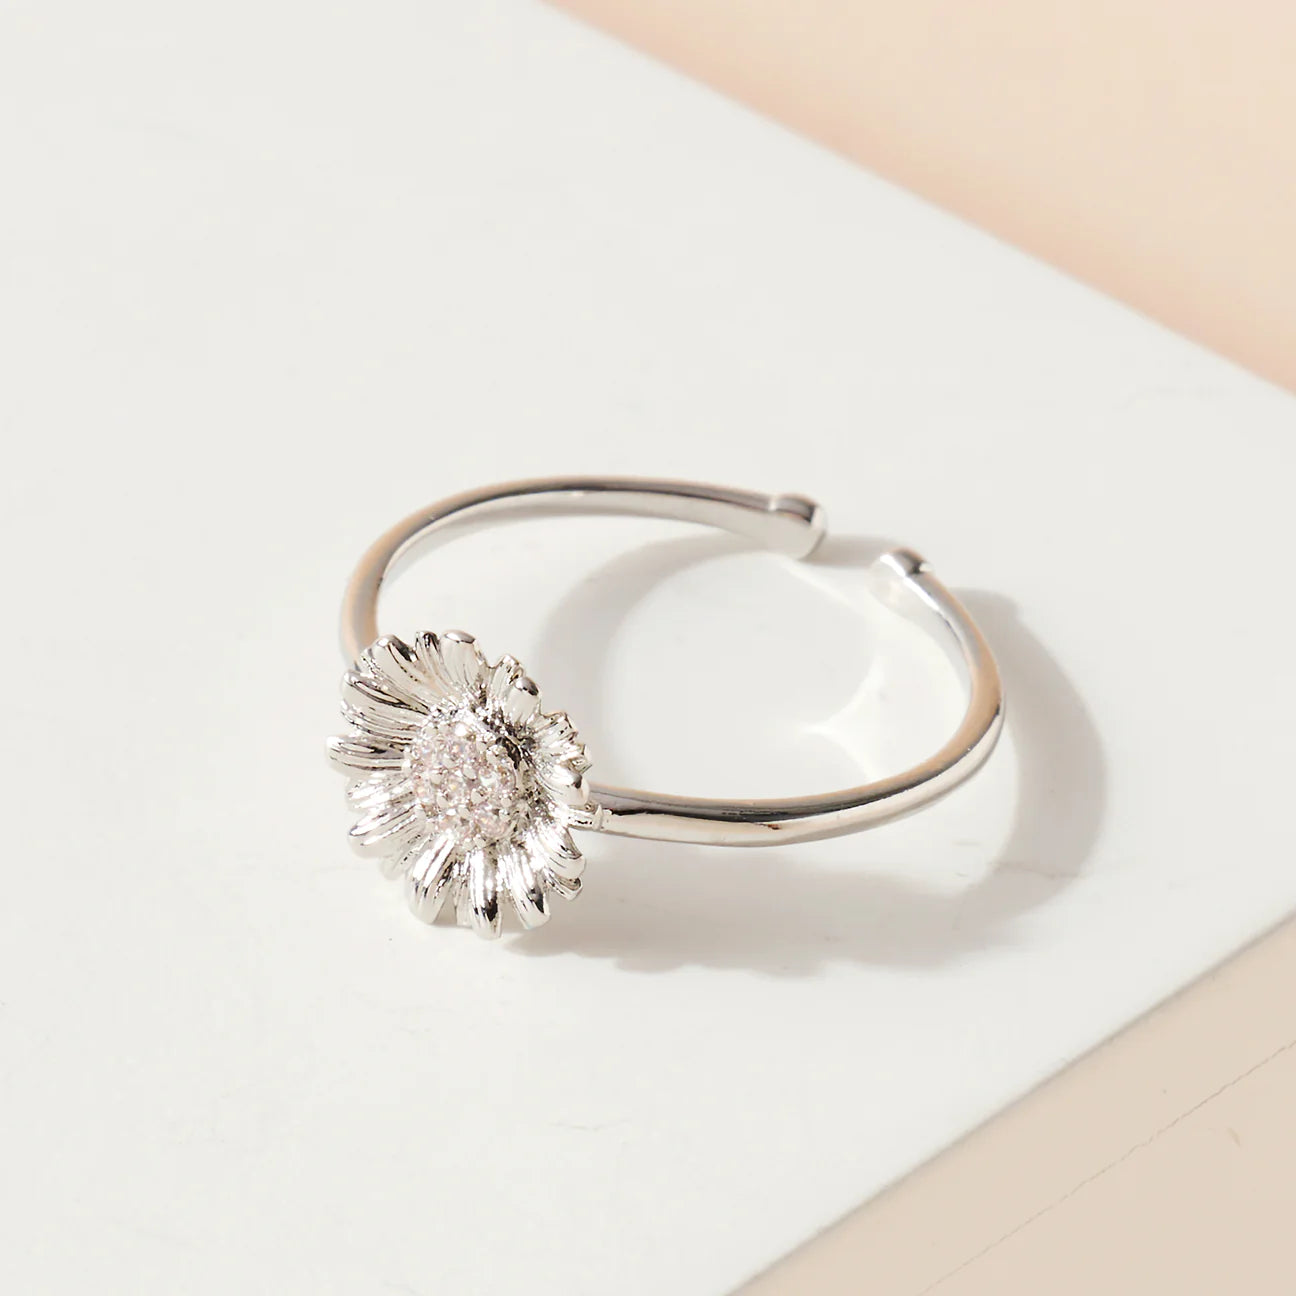 ‘FLOWER’ Ring - White Gold